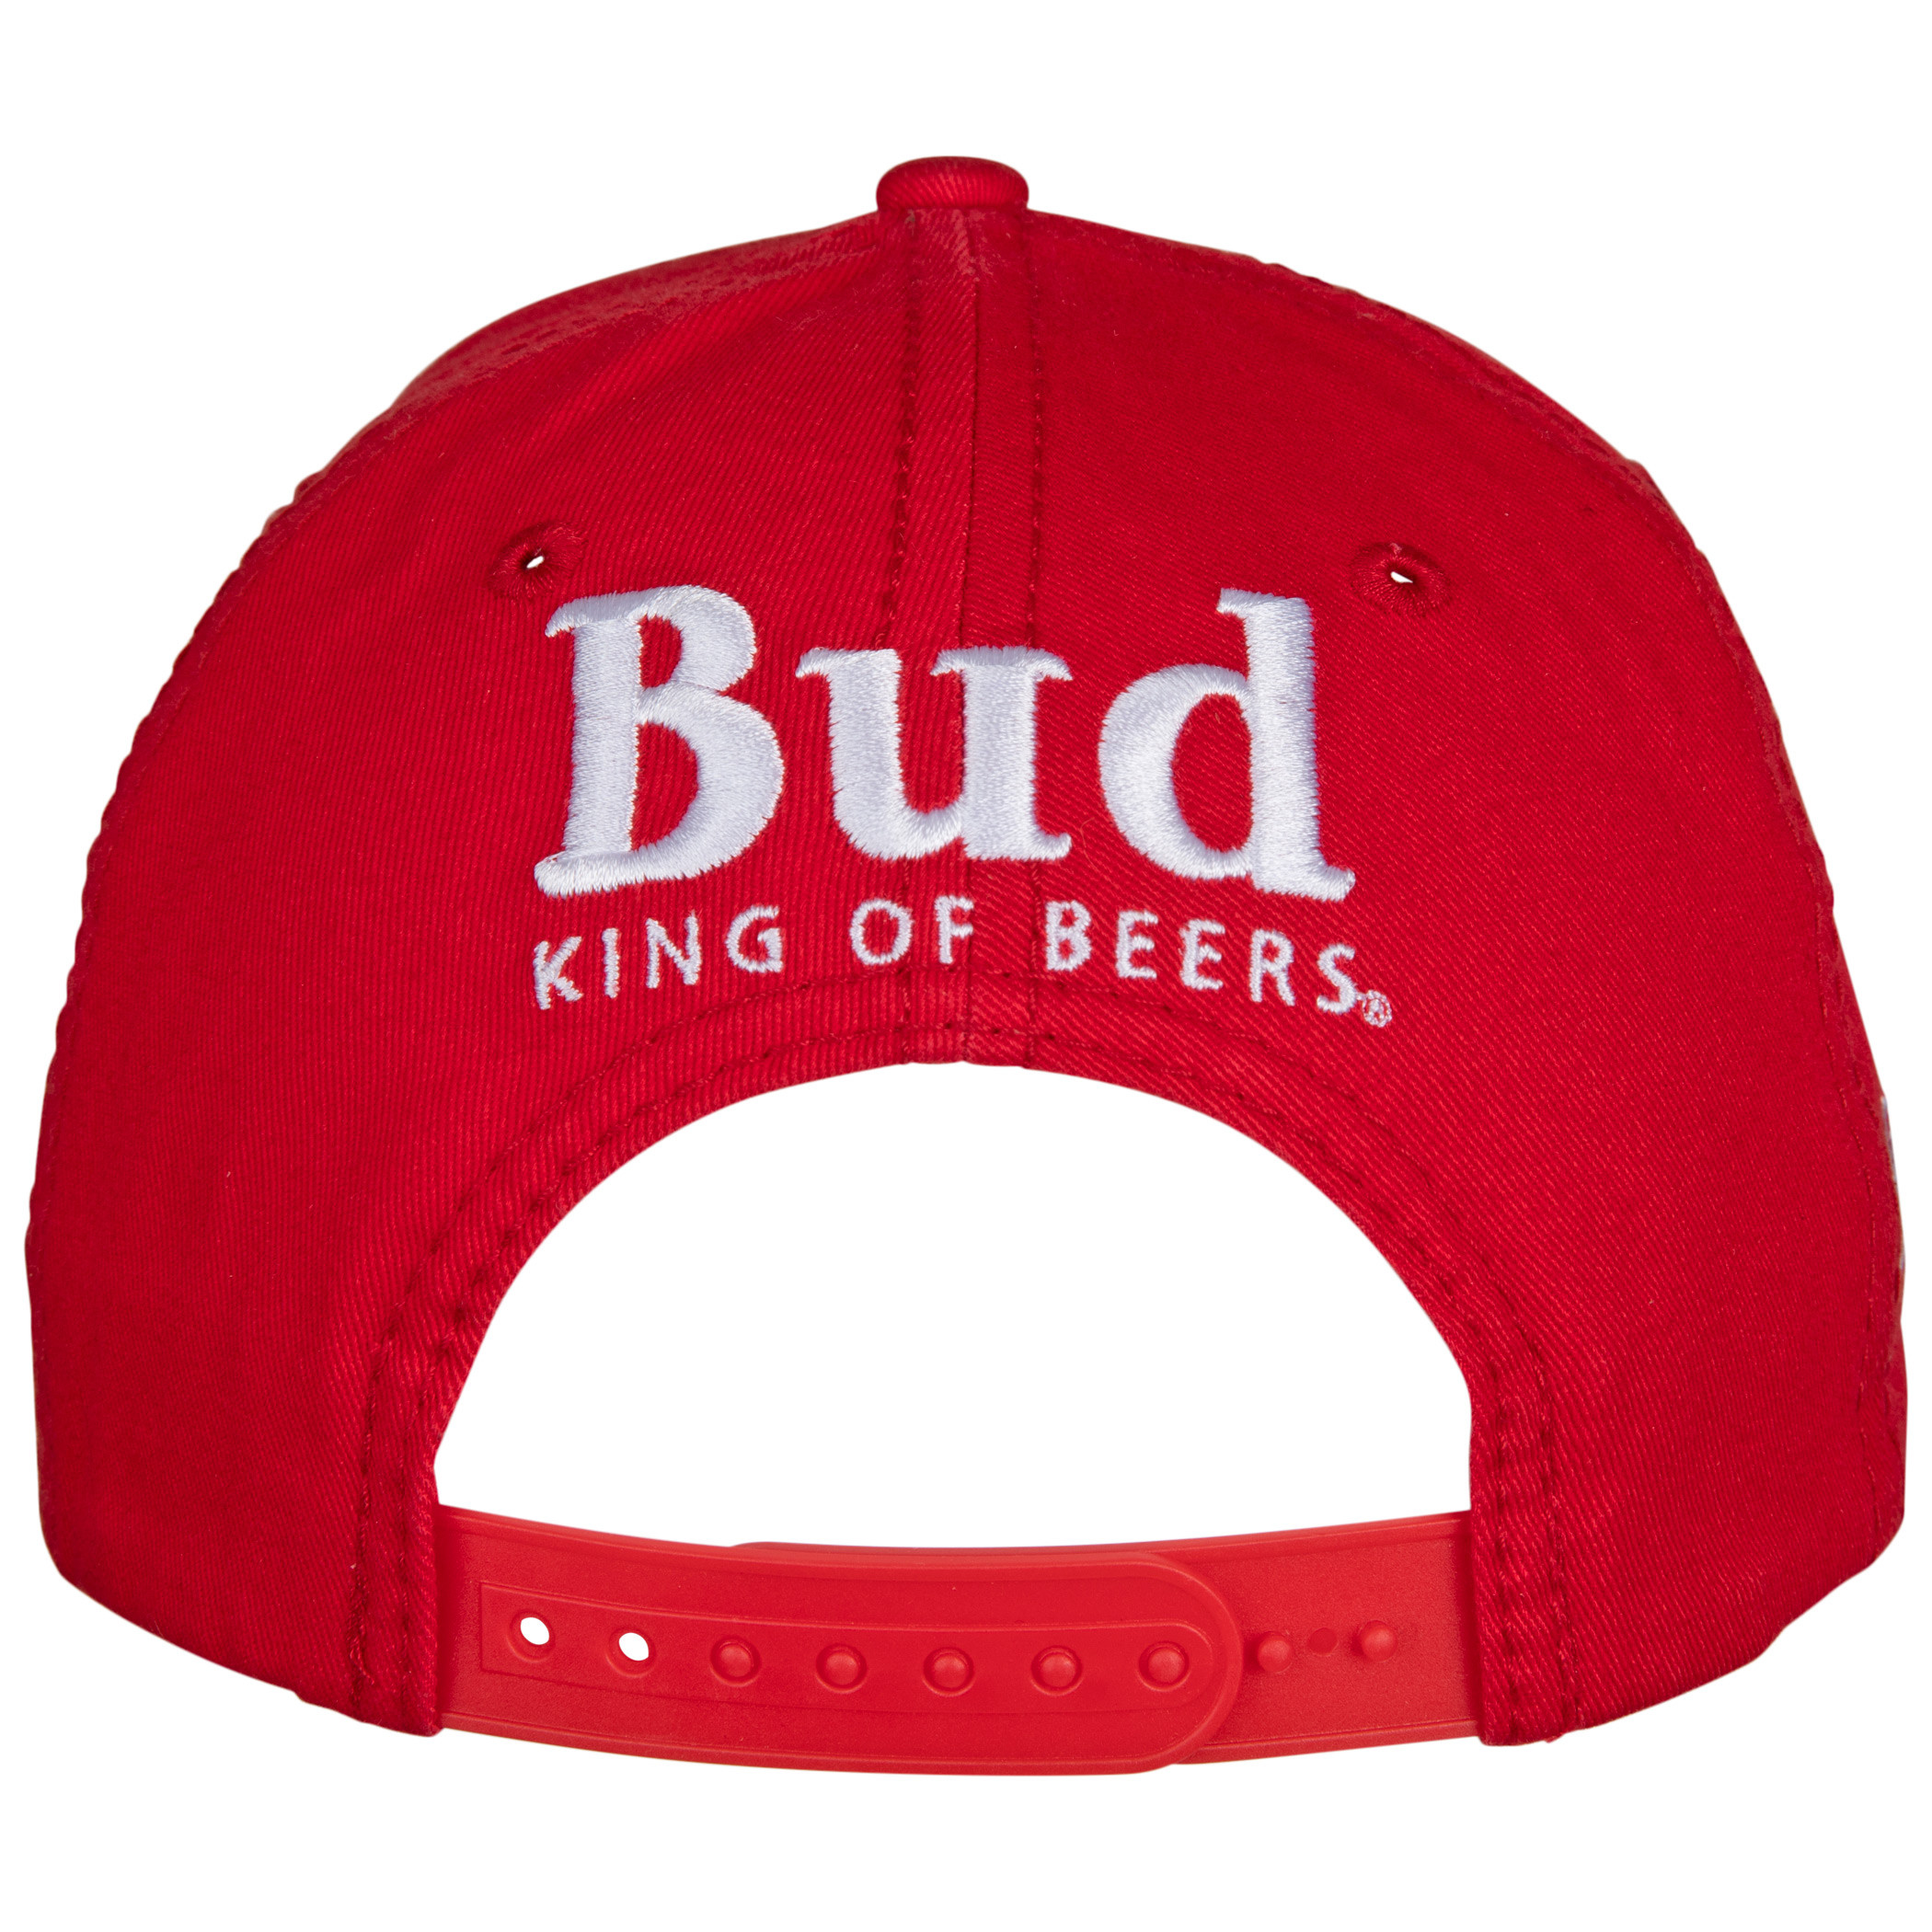 Budweiser King of Beers Snapback Cap.